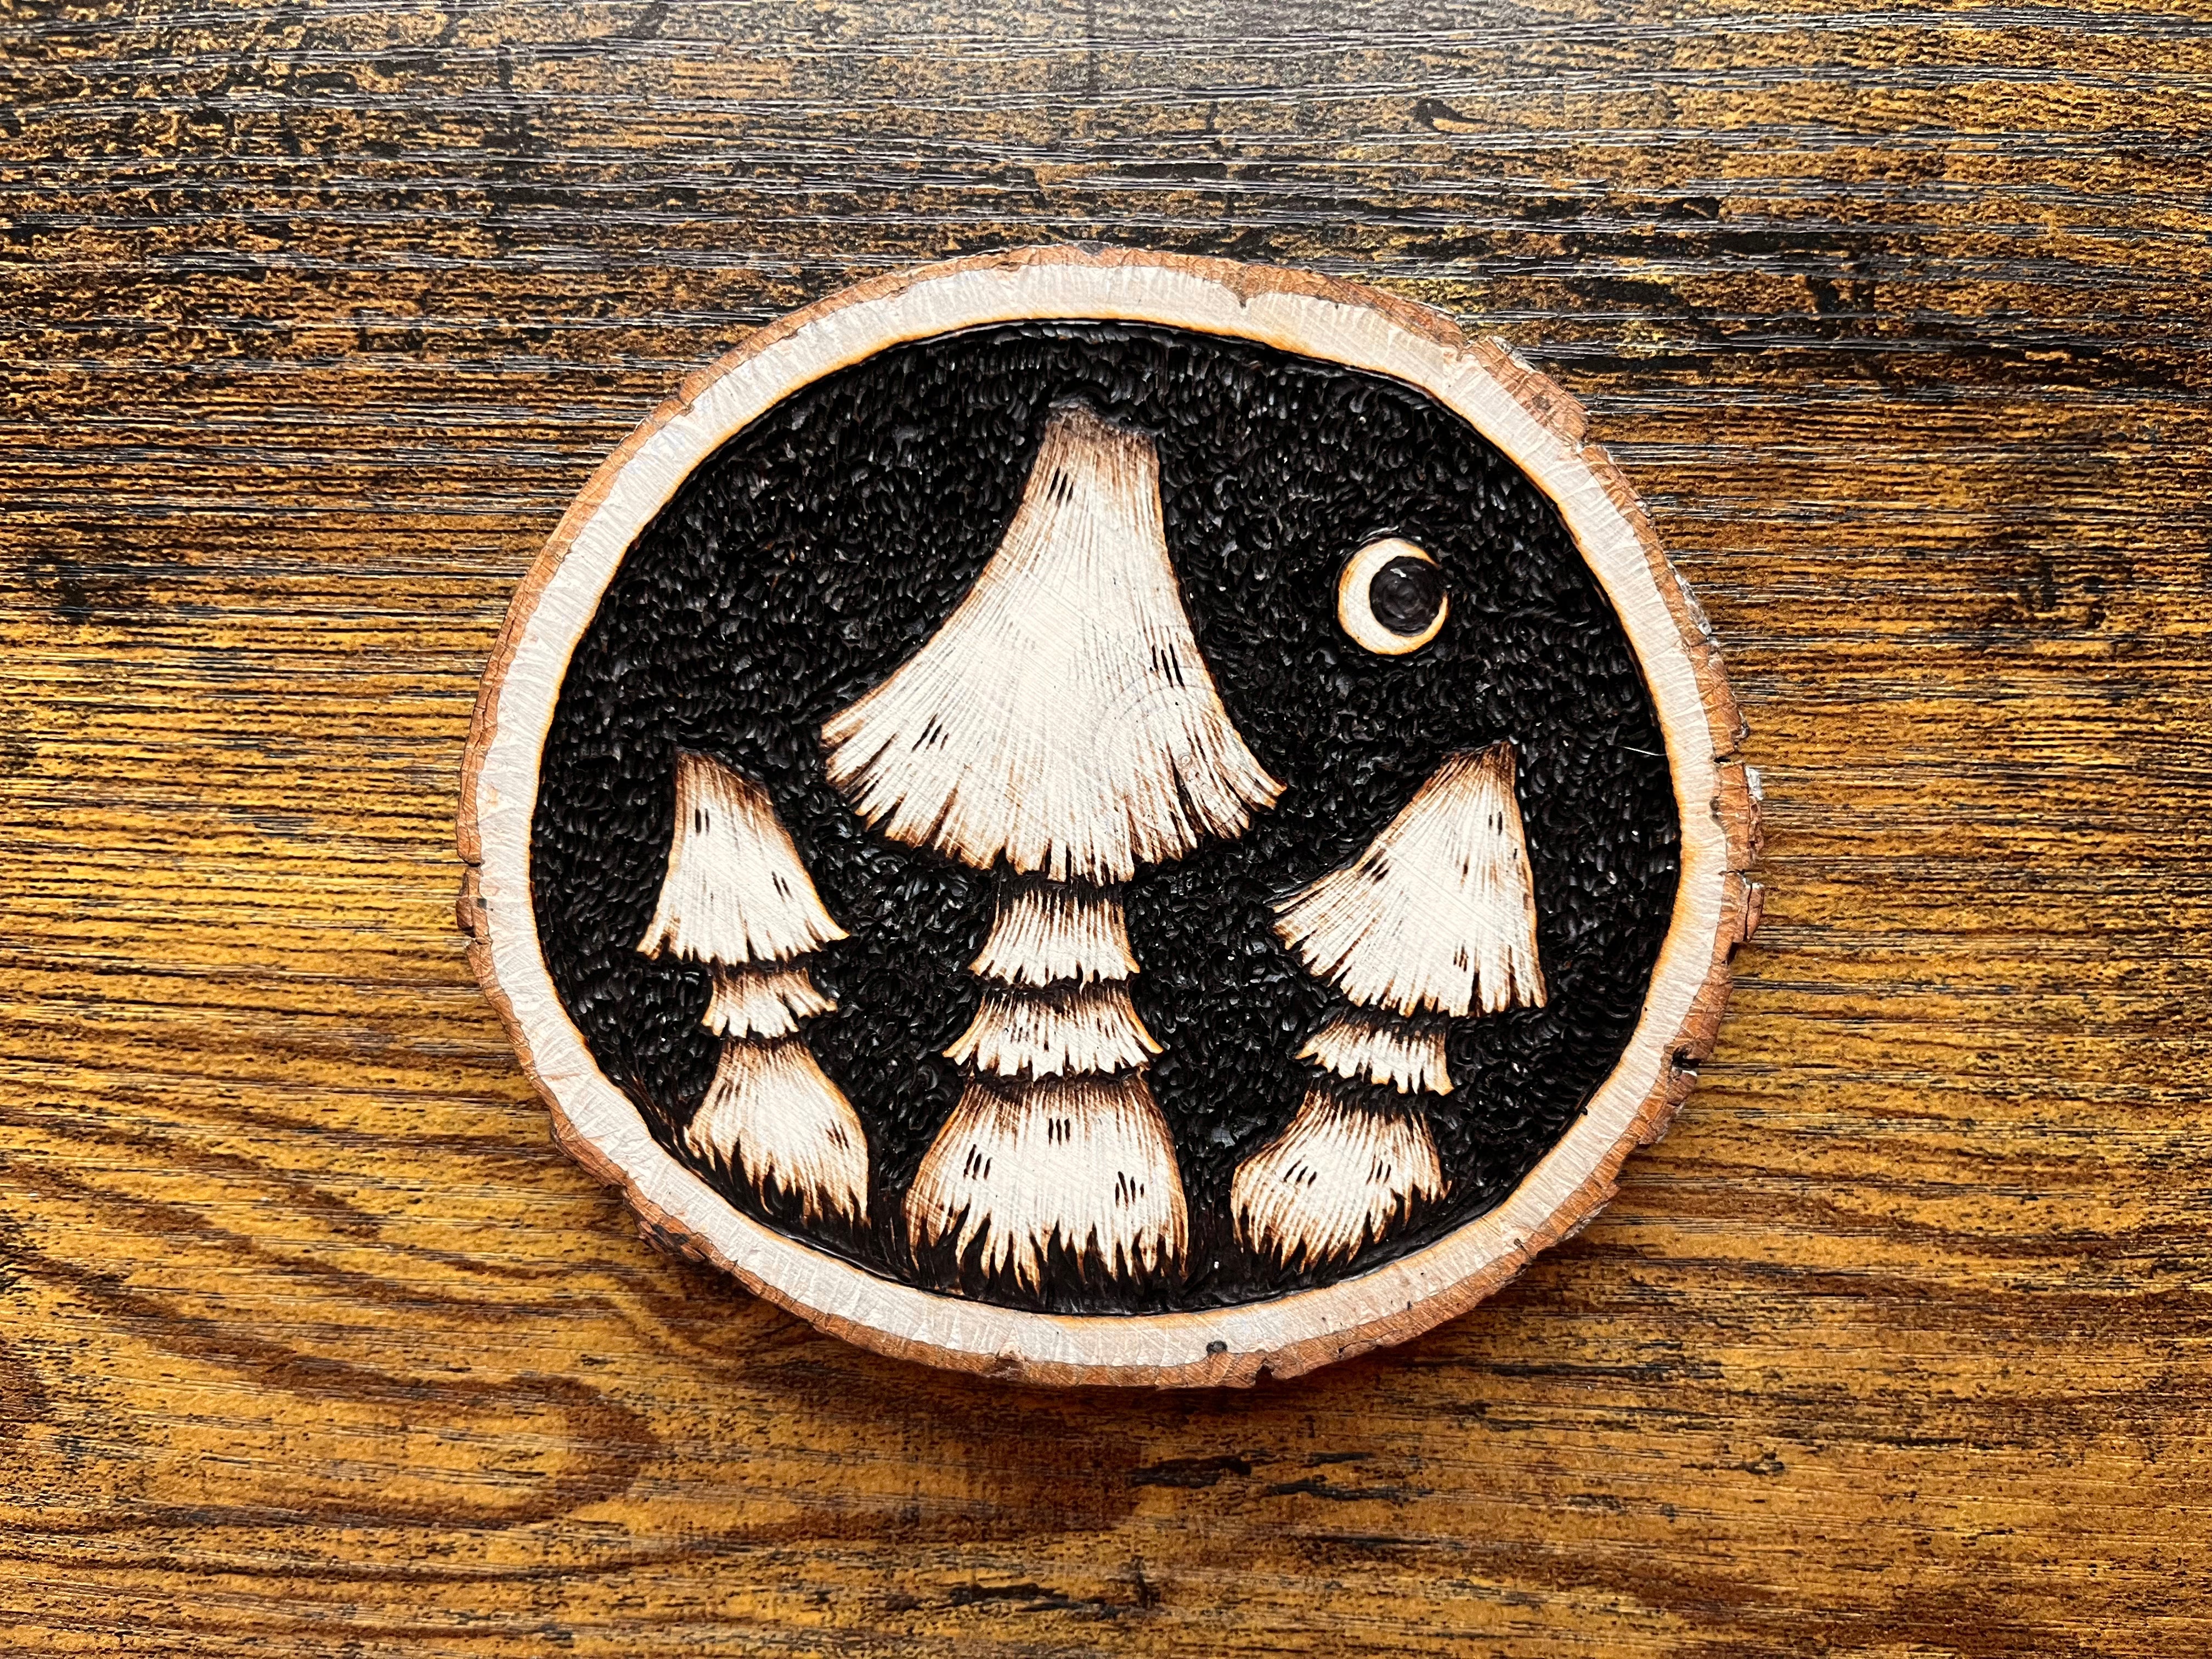 Mushroom's Moon Wood Burning